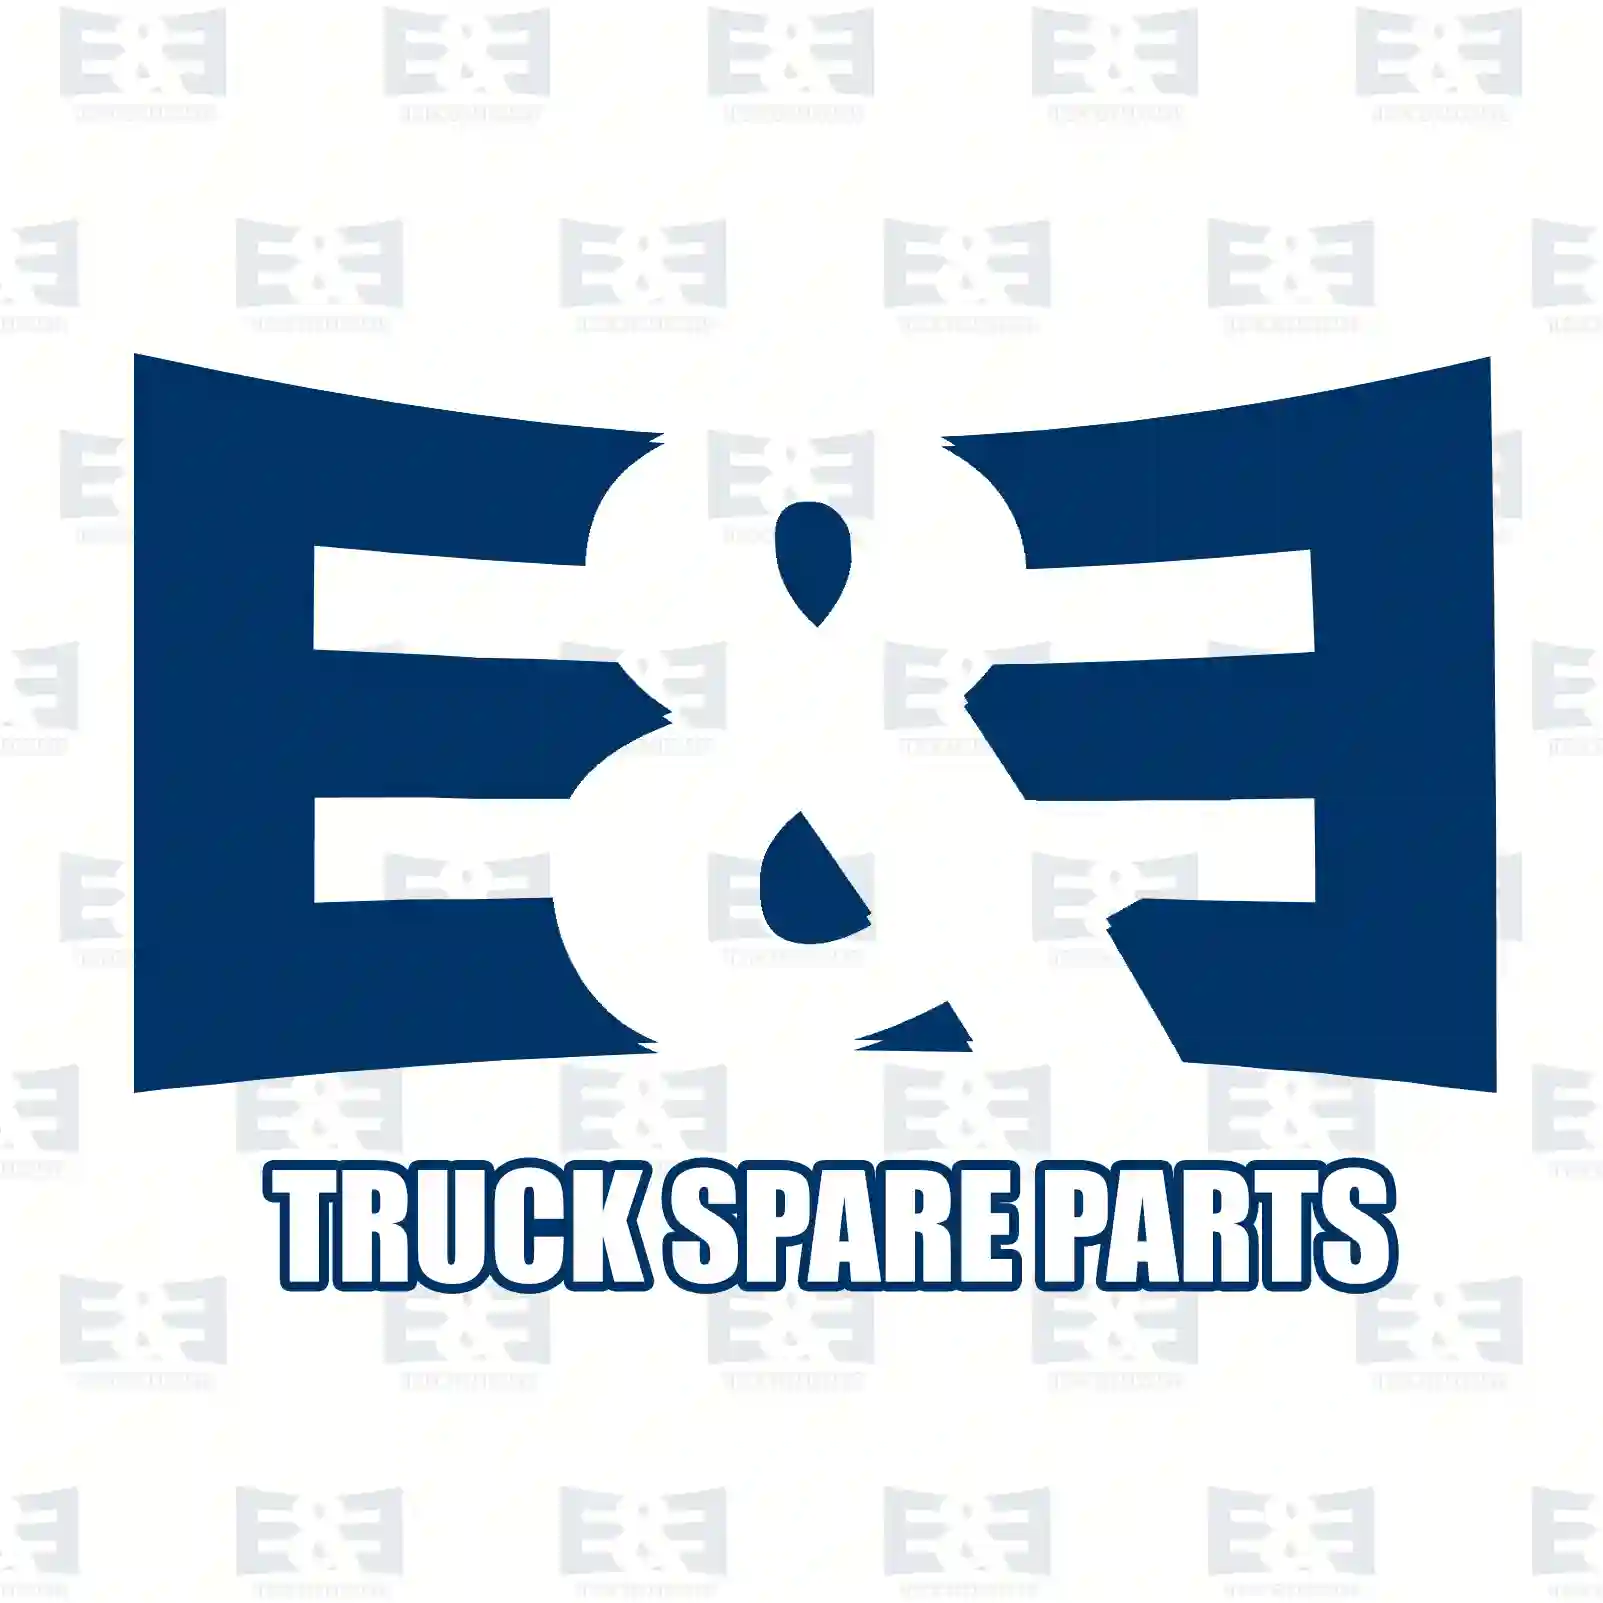 Air tank, 2E2296984, 81514010124, 81514010198, , , ||  2E2296984 E&E Truck Spare Parts | Truck Spare Parts, Auotomotive Spare Parts Air tank, 2E2296984, 81514010124, 81514010198, , , ||  2E2296984 E&E Truck Spare Parts | Truck Spare Parts, Auotomotive Spare Parts